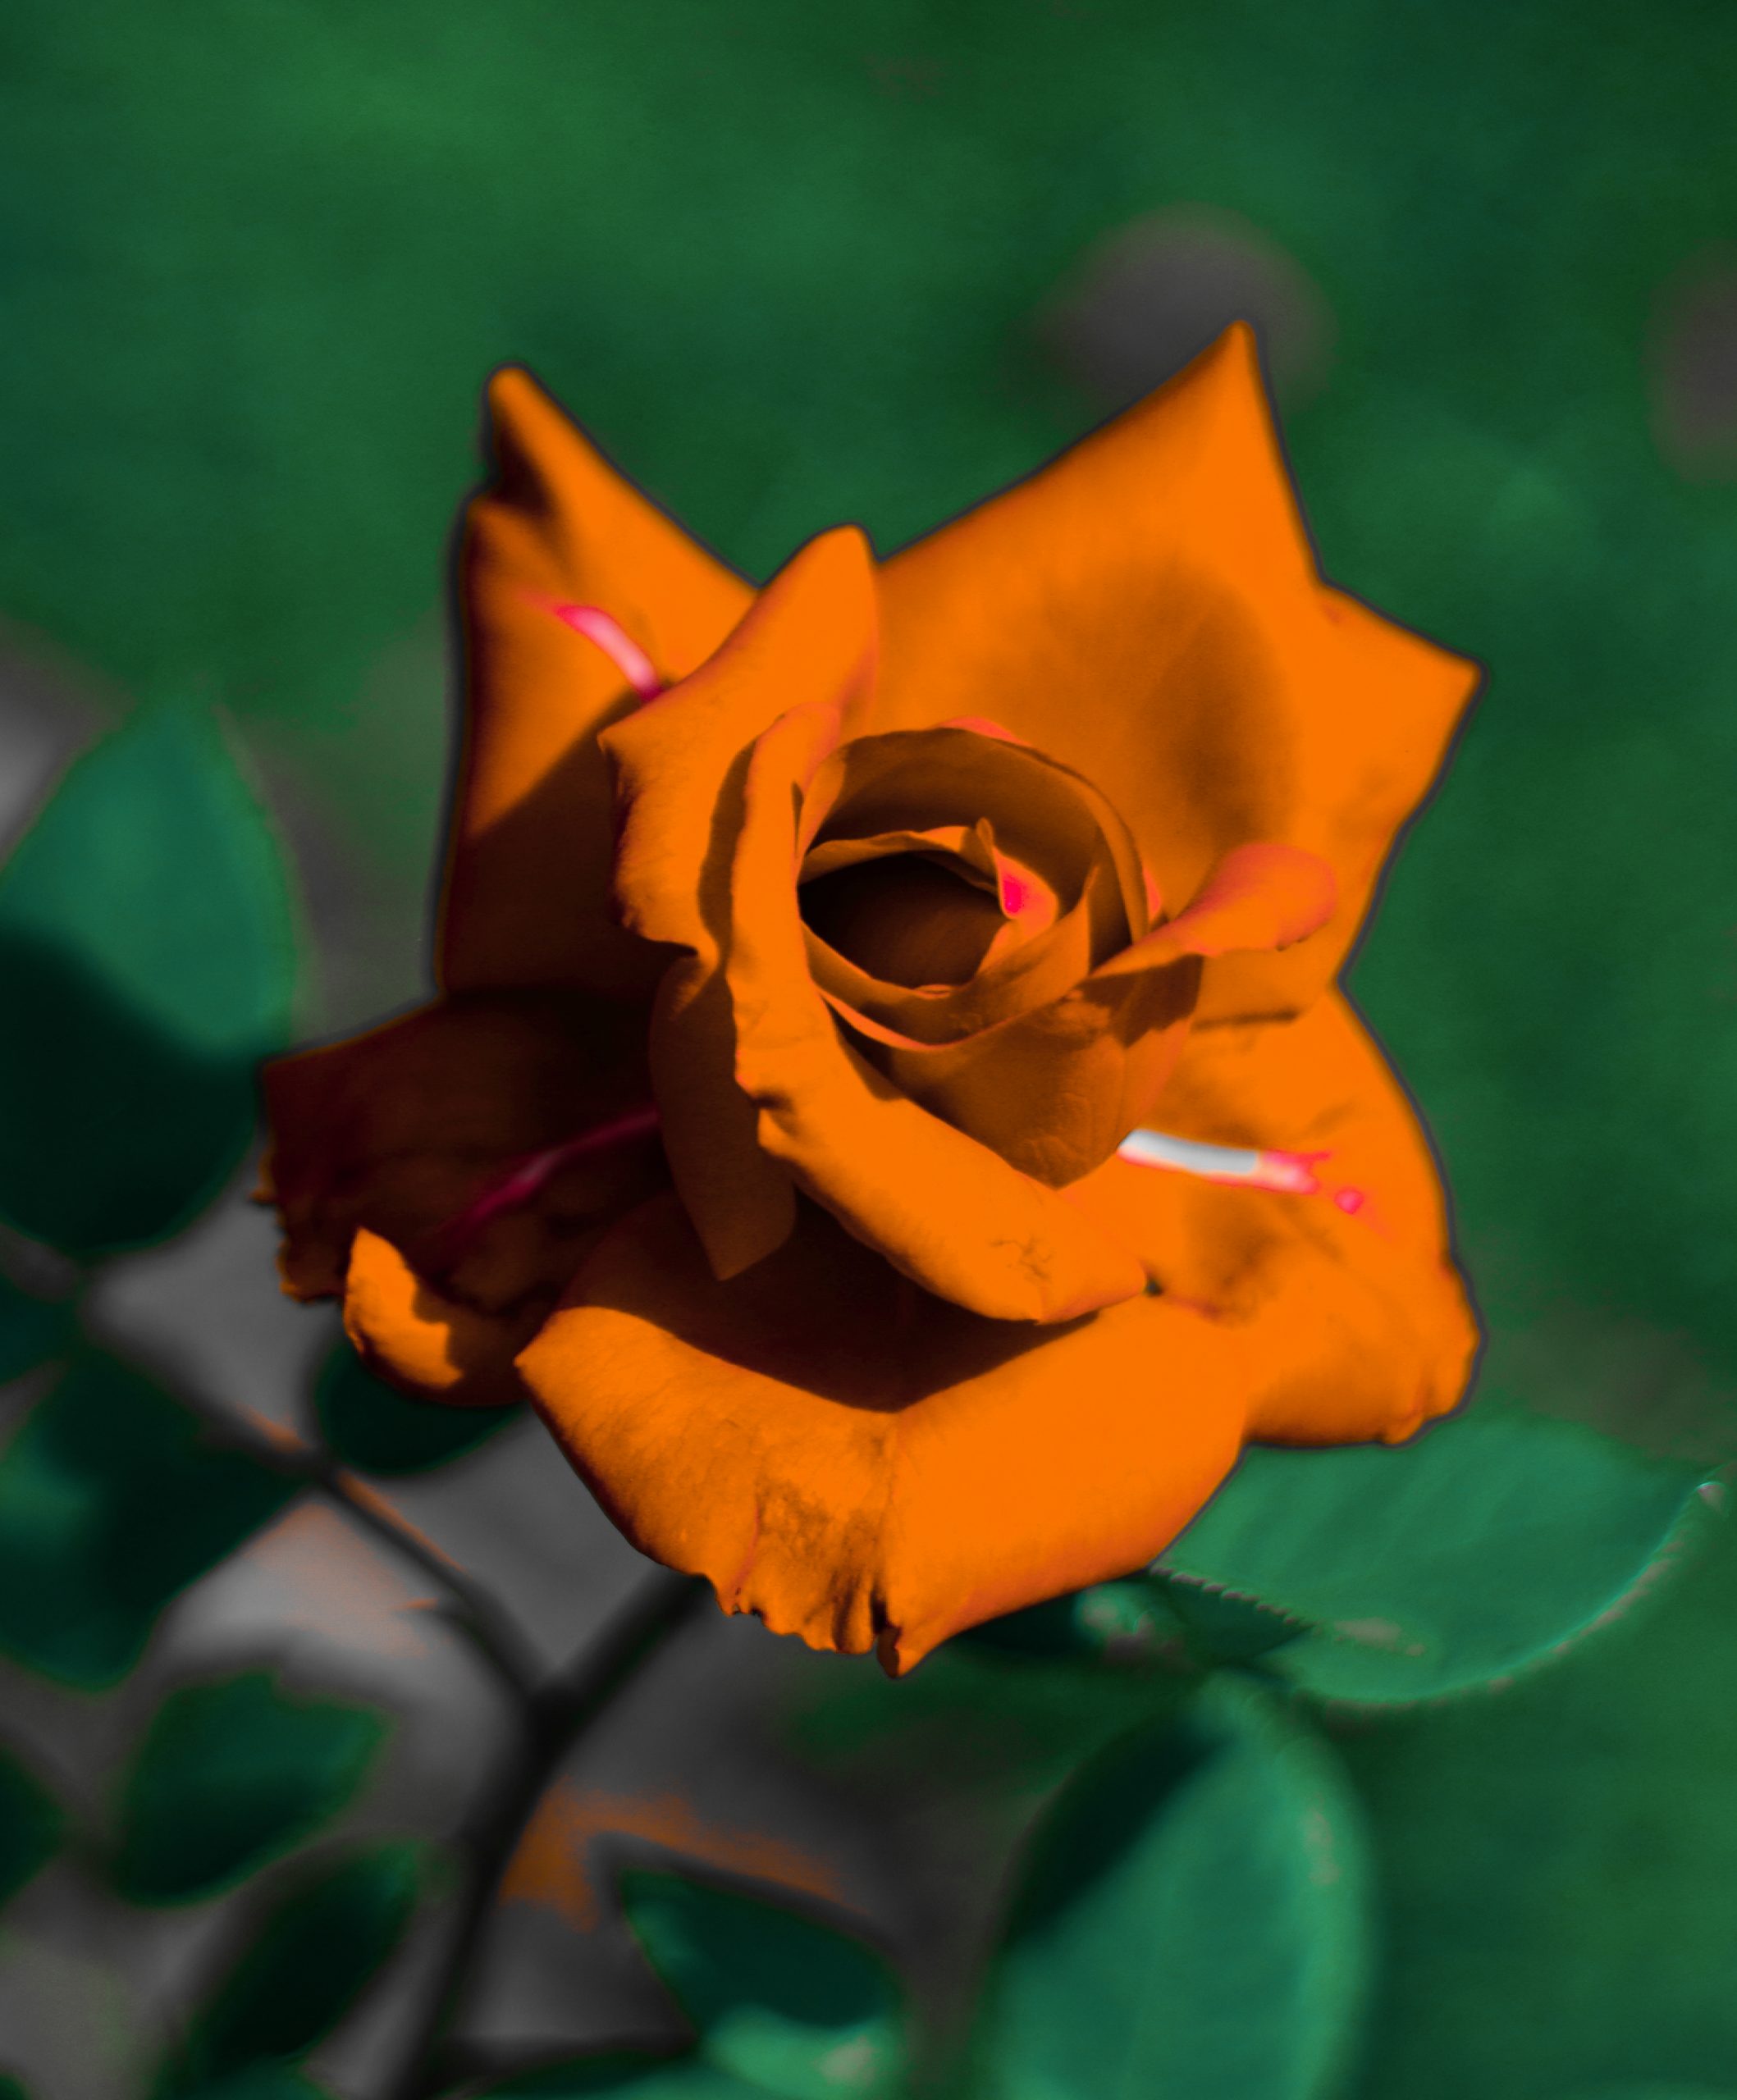 An orange rose